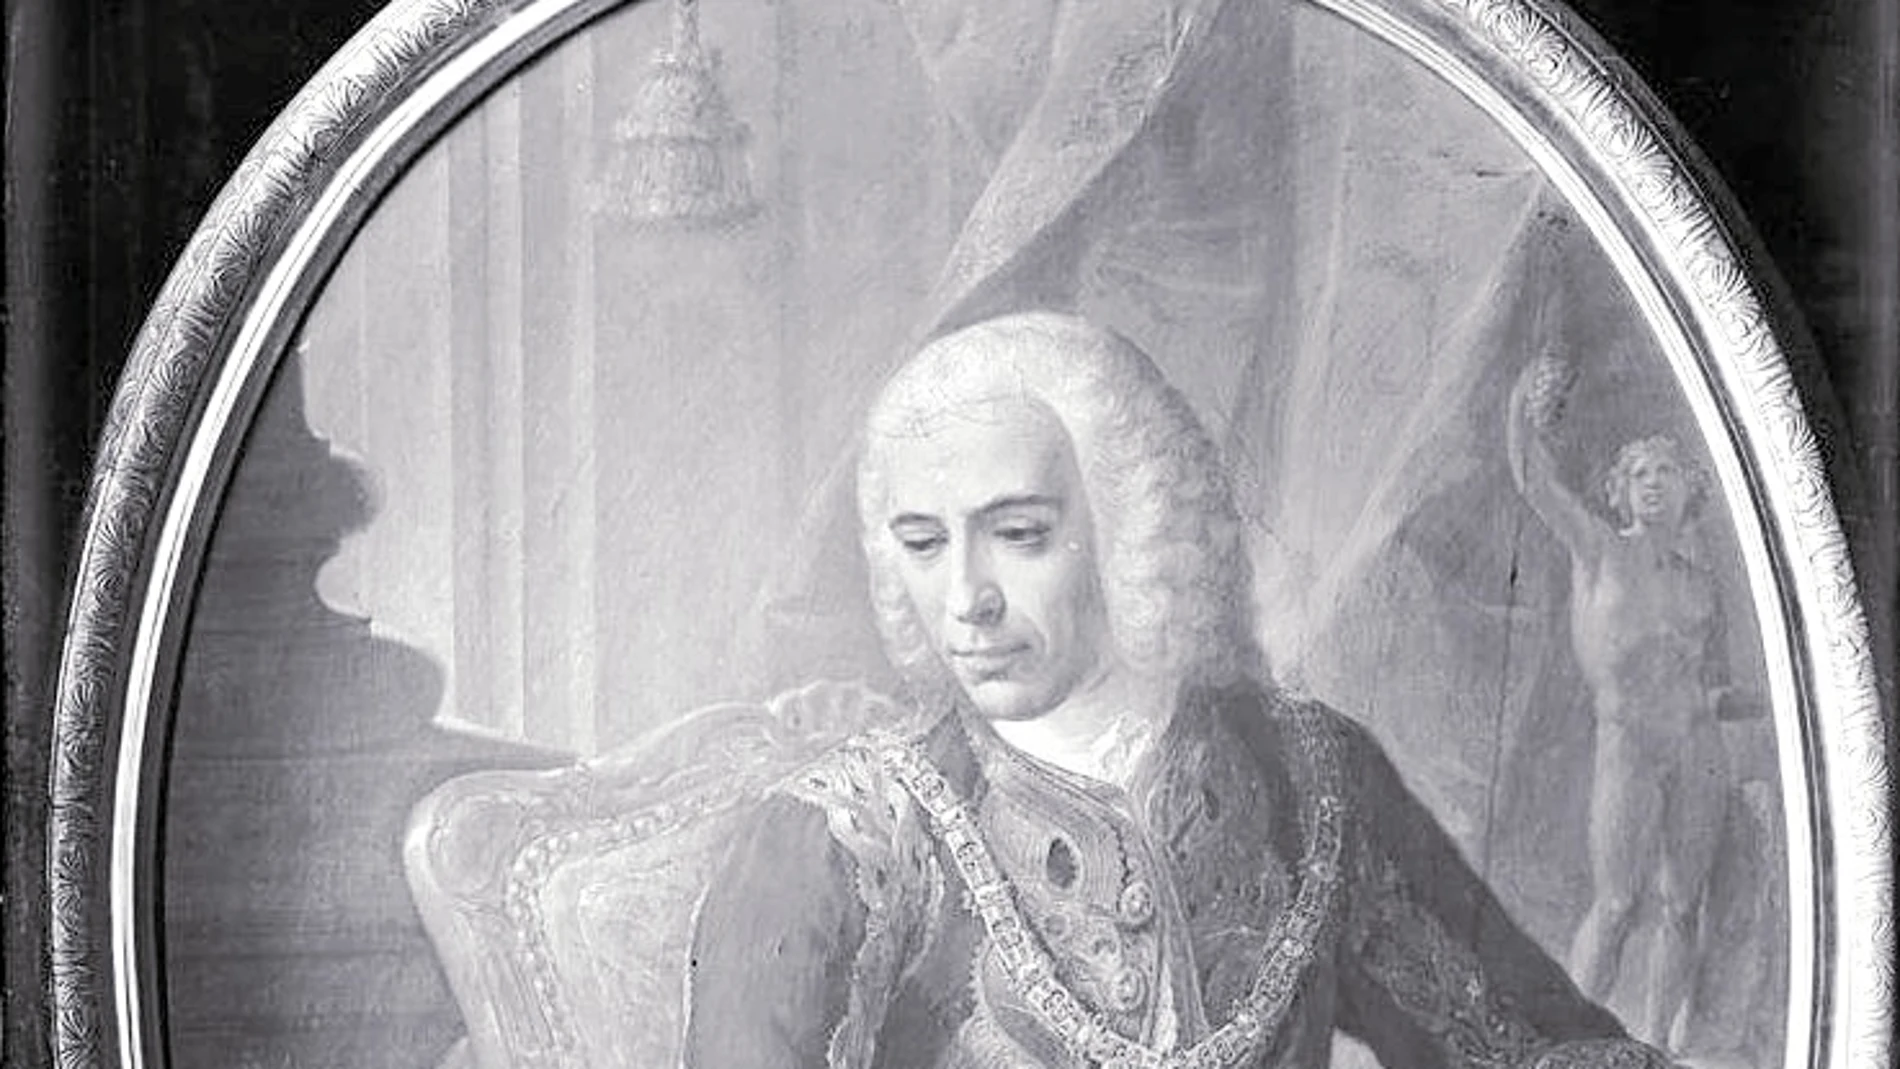 Retrato oval. El Marqués de la Ensenada pintado por Andrés de la Calleja